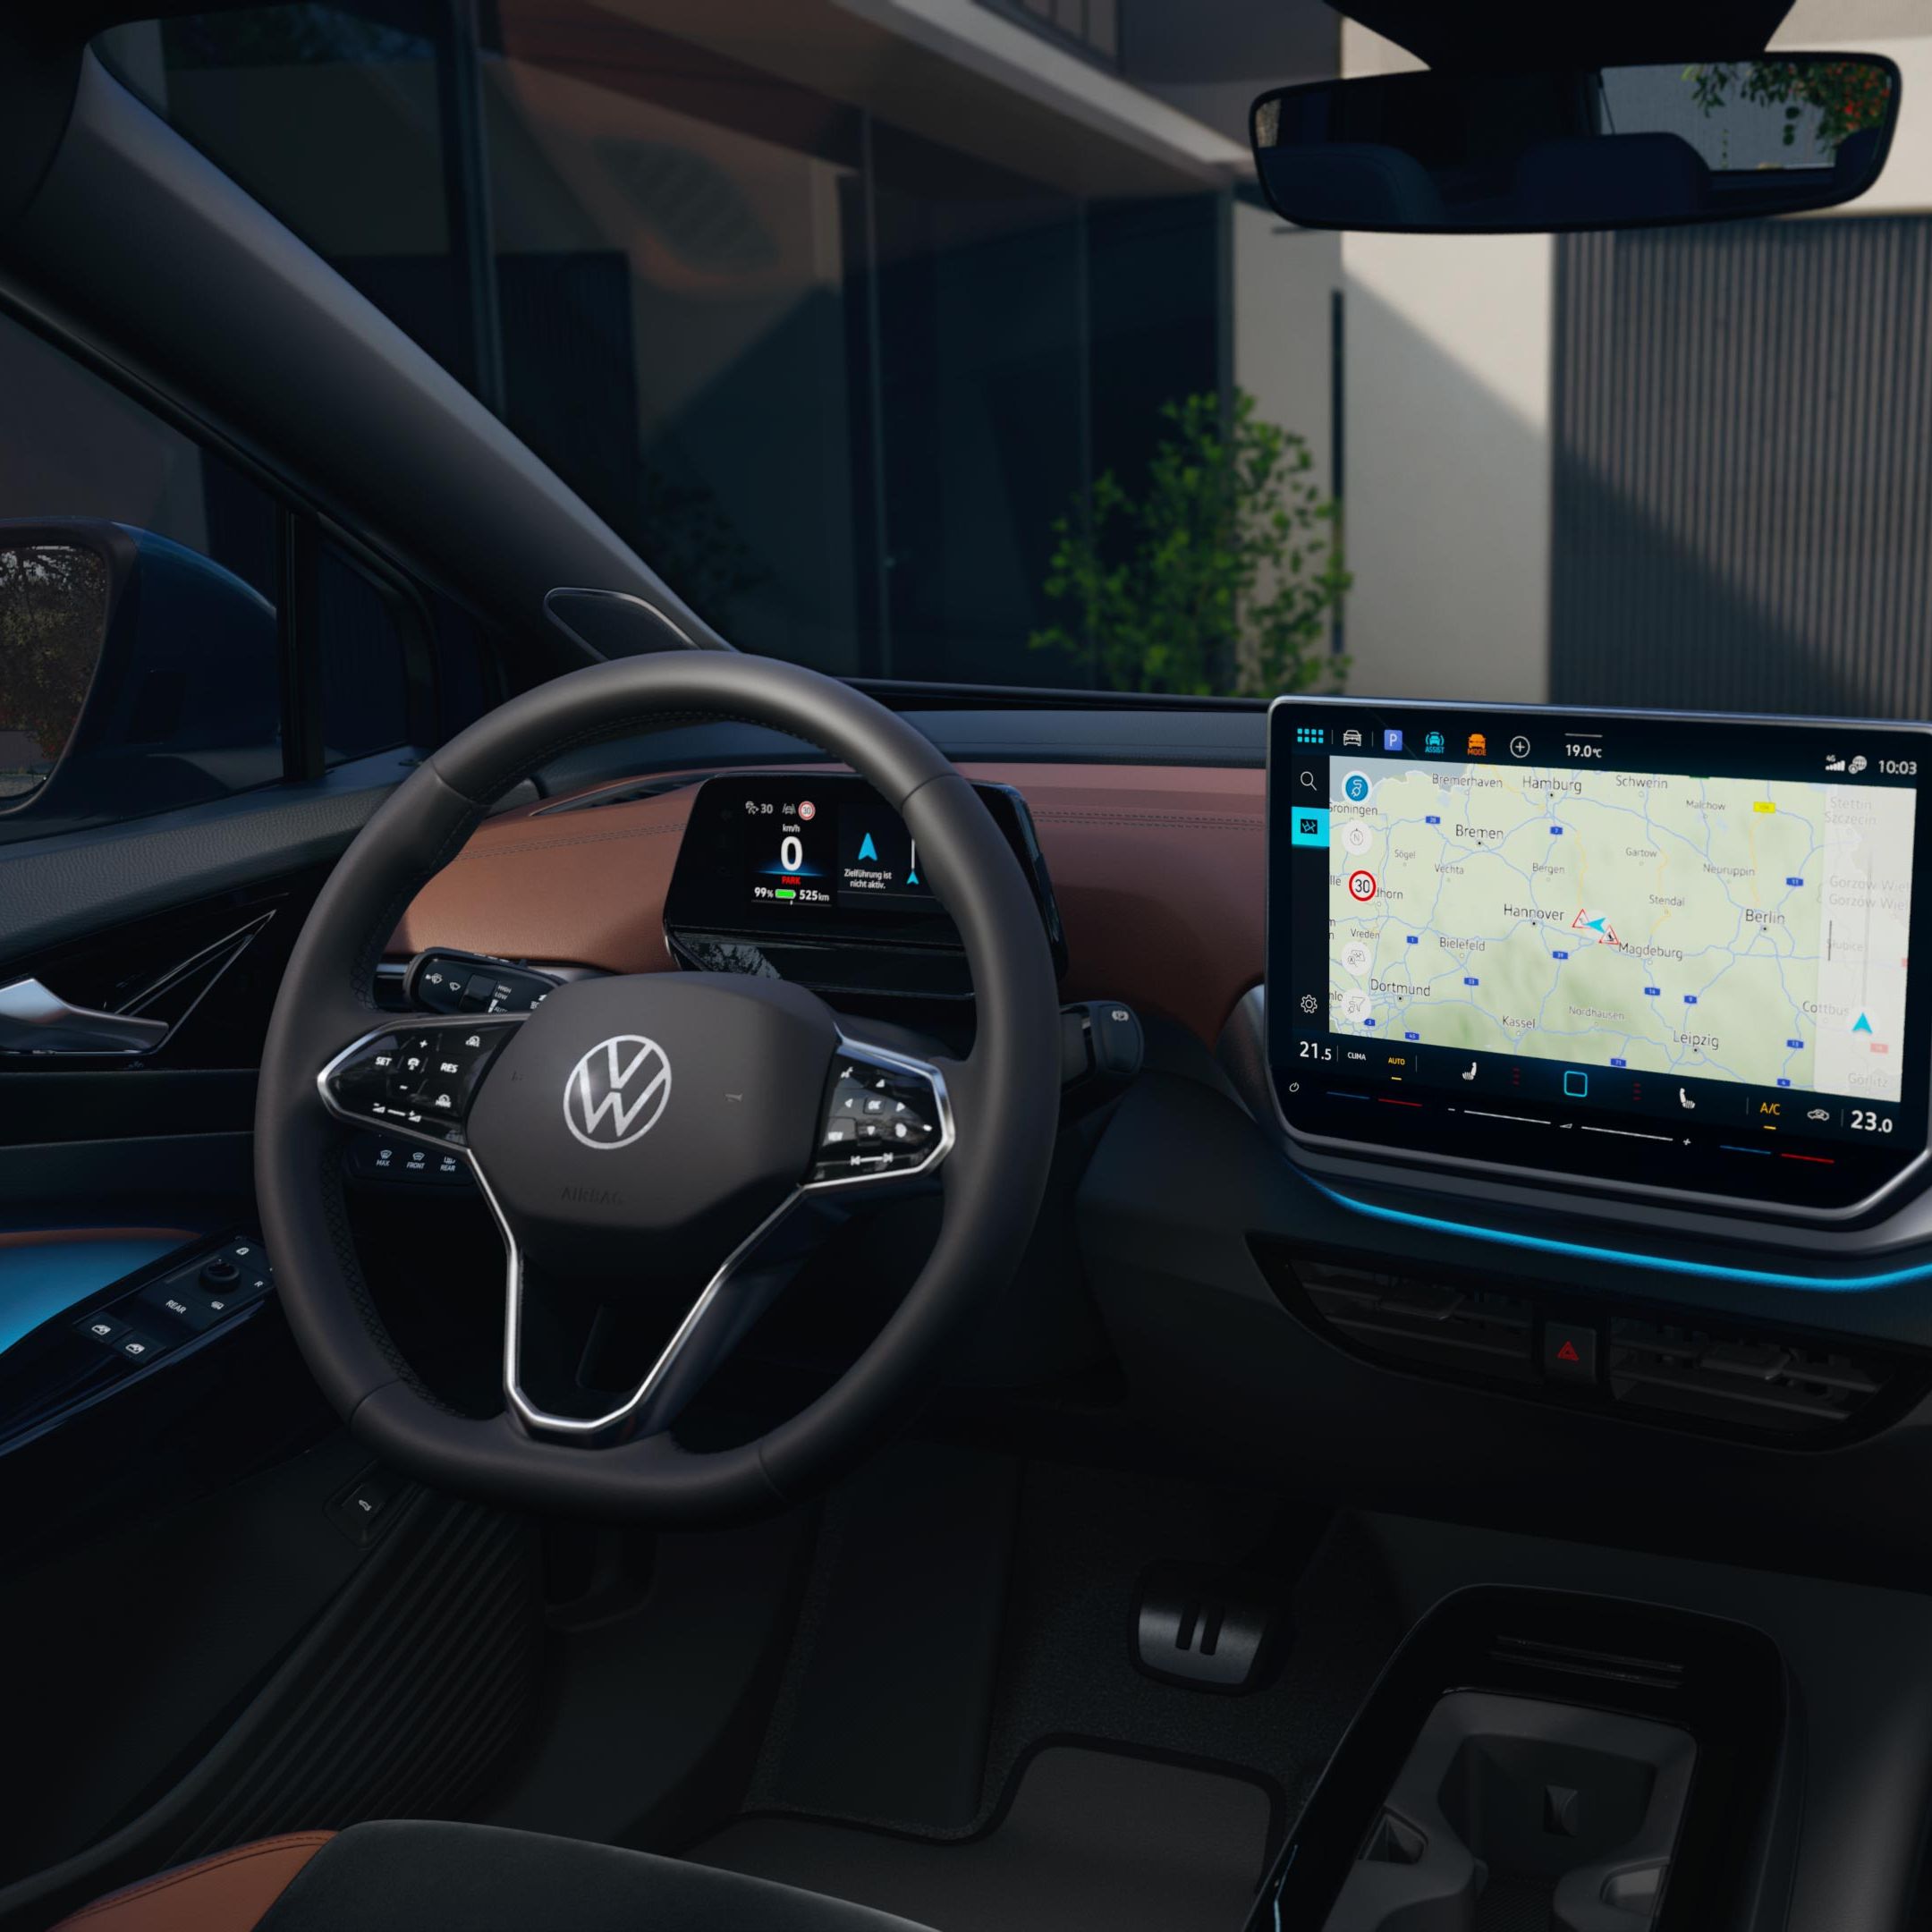 Detailaufnahme des Infotainment-Displays im VW ID.4. Das Display zeigt eine Navigationskarte.